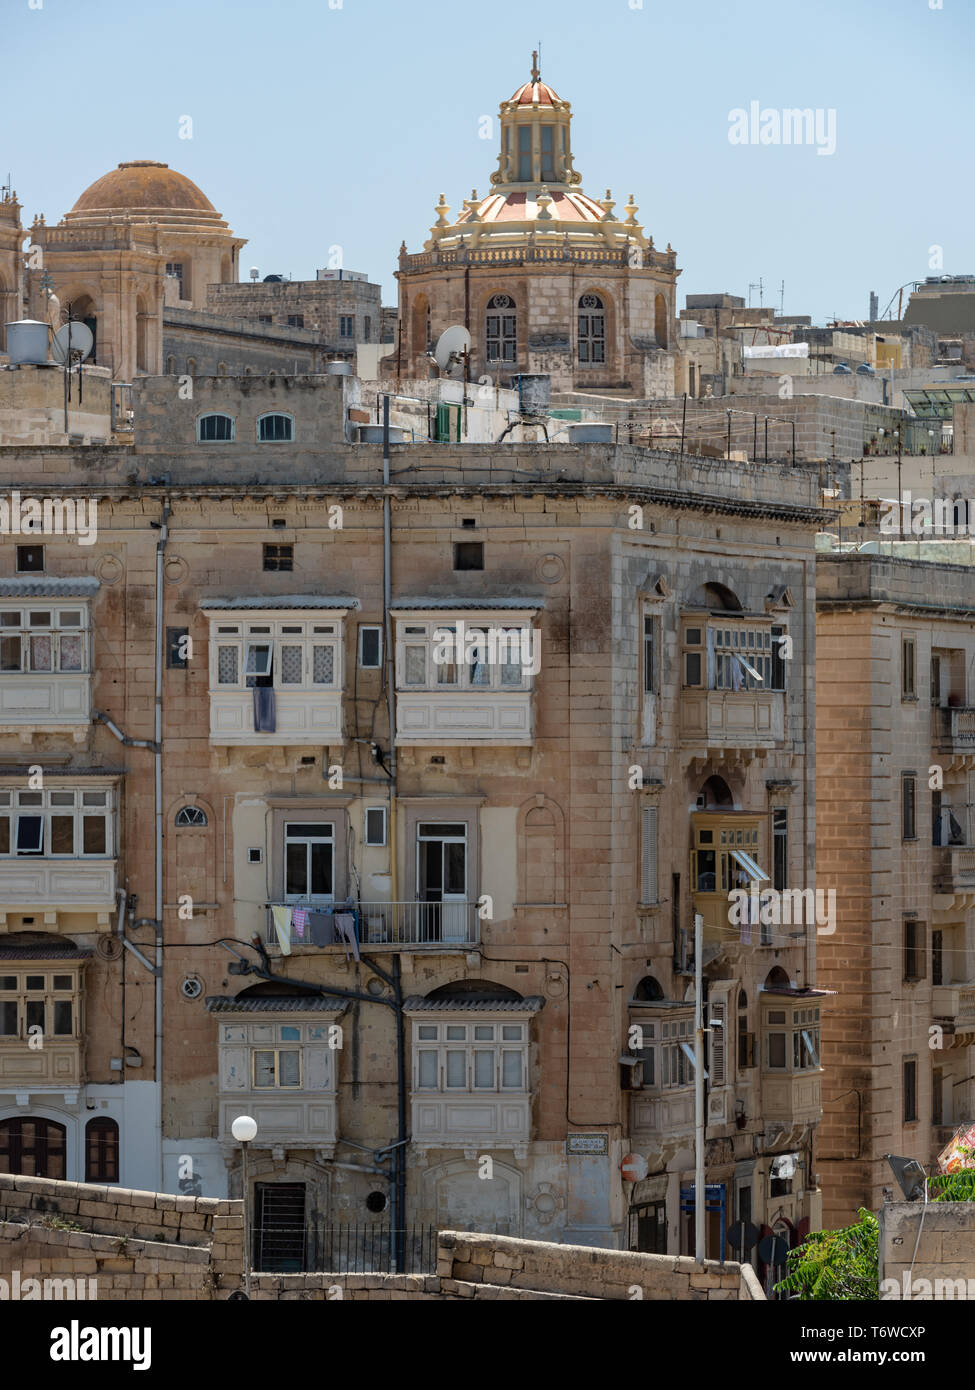 Die prunkvolle barocke Kuppel und Laterne der barocken Basilika St. Dominic ragt über die historischen Kalksteingebäude von Valletta Stockfoto